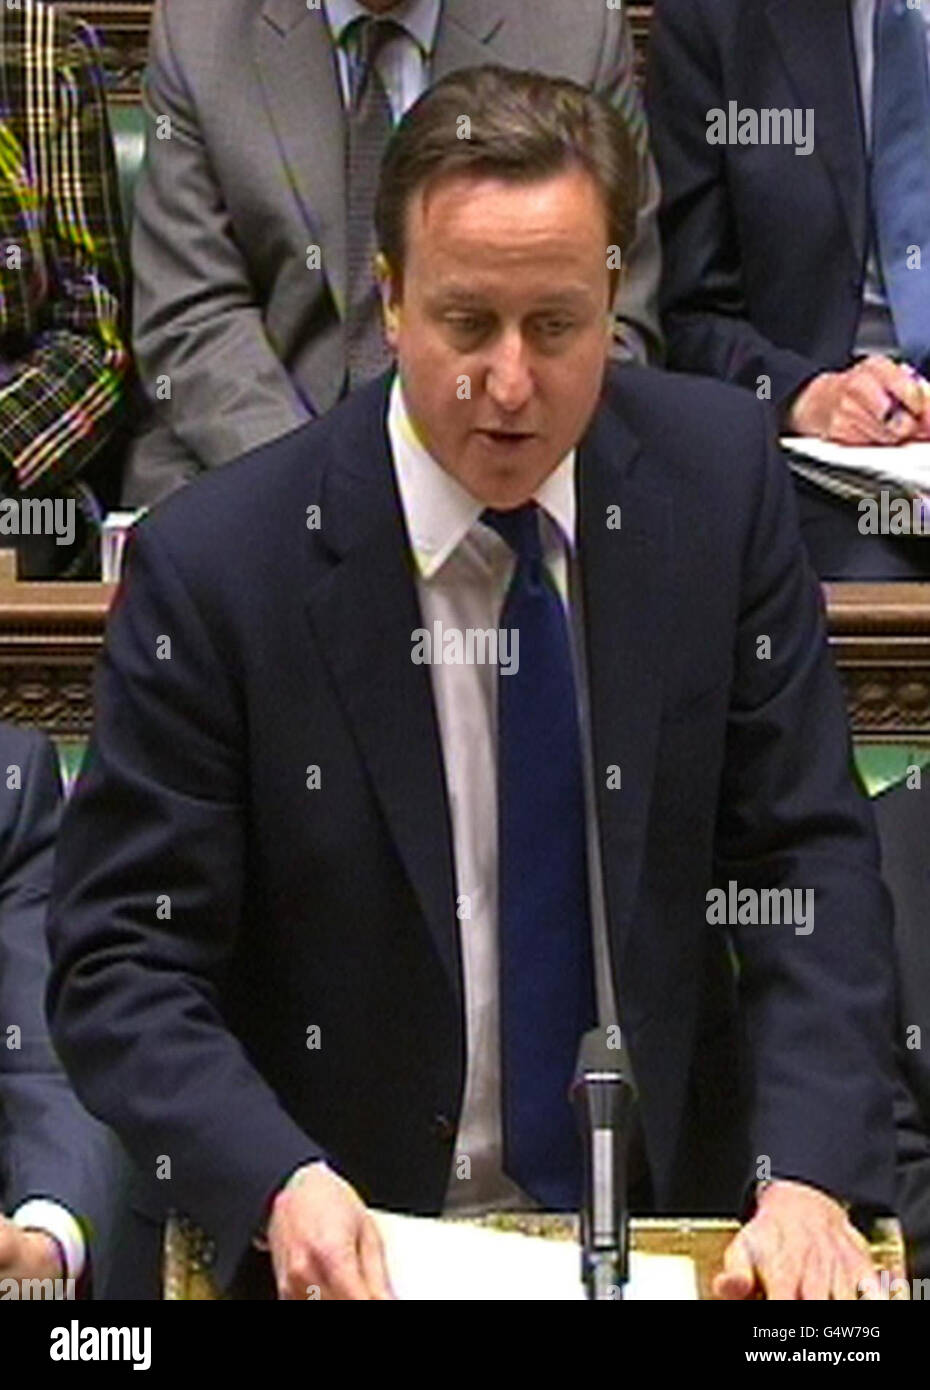 Premierminister David Cameron spricht im Londoner Unterhaus, als er einer Gegenreaktion von Tory-Euroskeptikern gegenüberstand, nachdem er seine Opposition gegen den Europäischen Gerichtshof aufgegeben hatte, der dazu verwendet wurde, einen neuen Fiskalpakt für die Eurozone durchzusetzen. Stockfoto